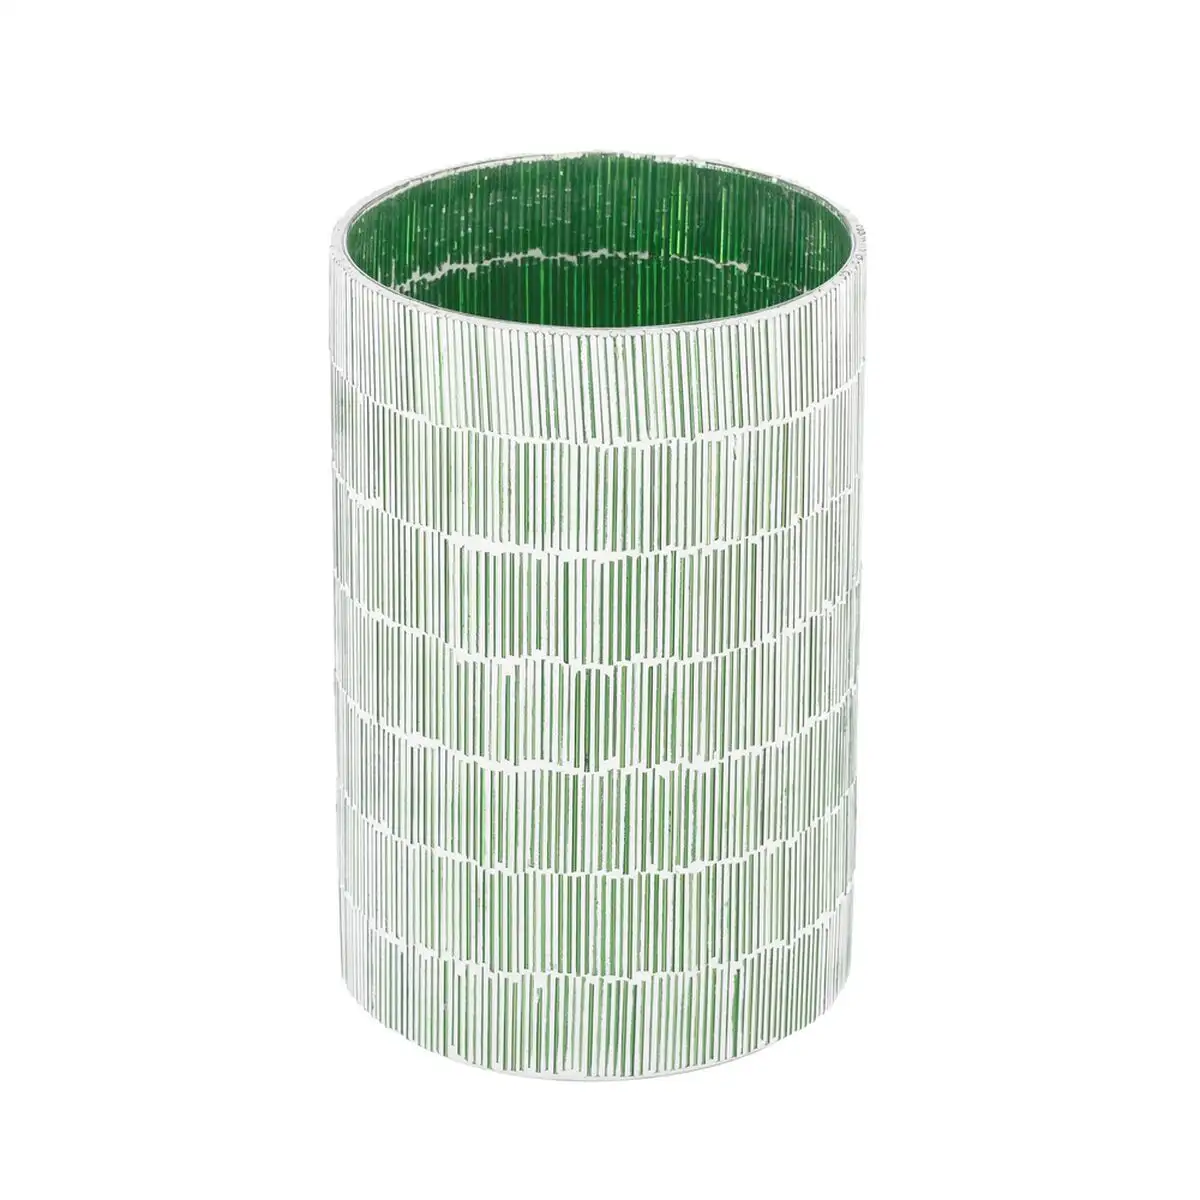 Bougeoir vert verre ciment 13 x 13 x 20 cm_6235. DIAYTAR SENEGAL - L'Art de Trouver ce que Vous Aimez. Plongez dans notre assortiment varié et choisissez parmi des produits qui reflètent votre style et répondent à vos besoins.